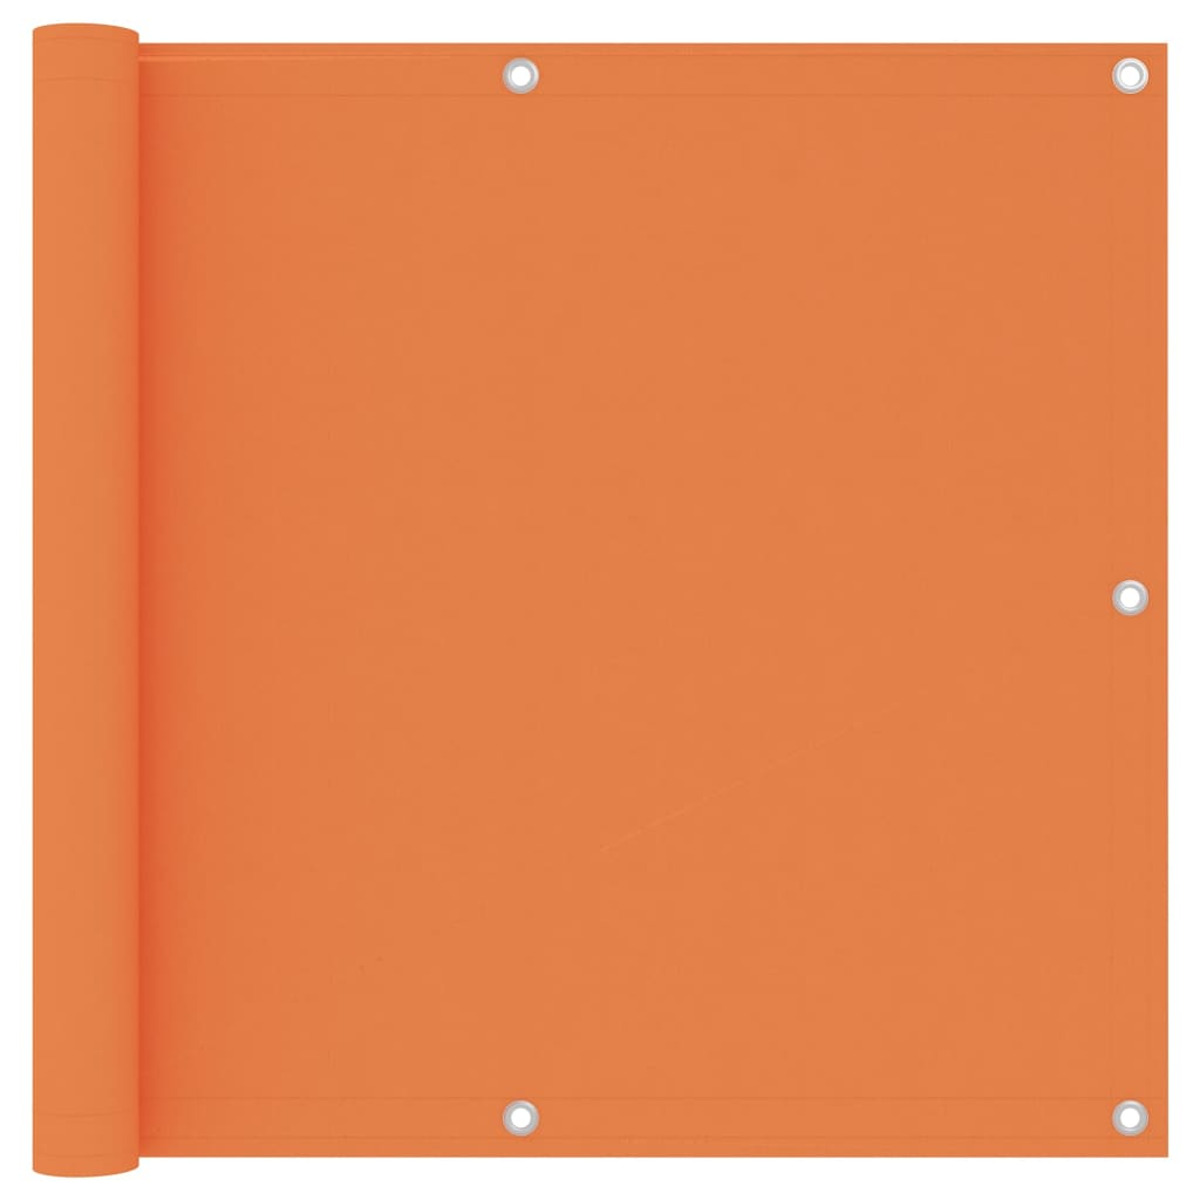 VIDAXL Orange 135049 Sichtschutz,